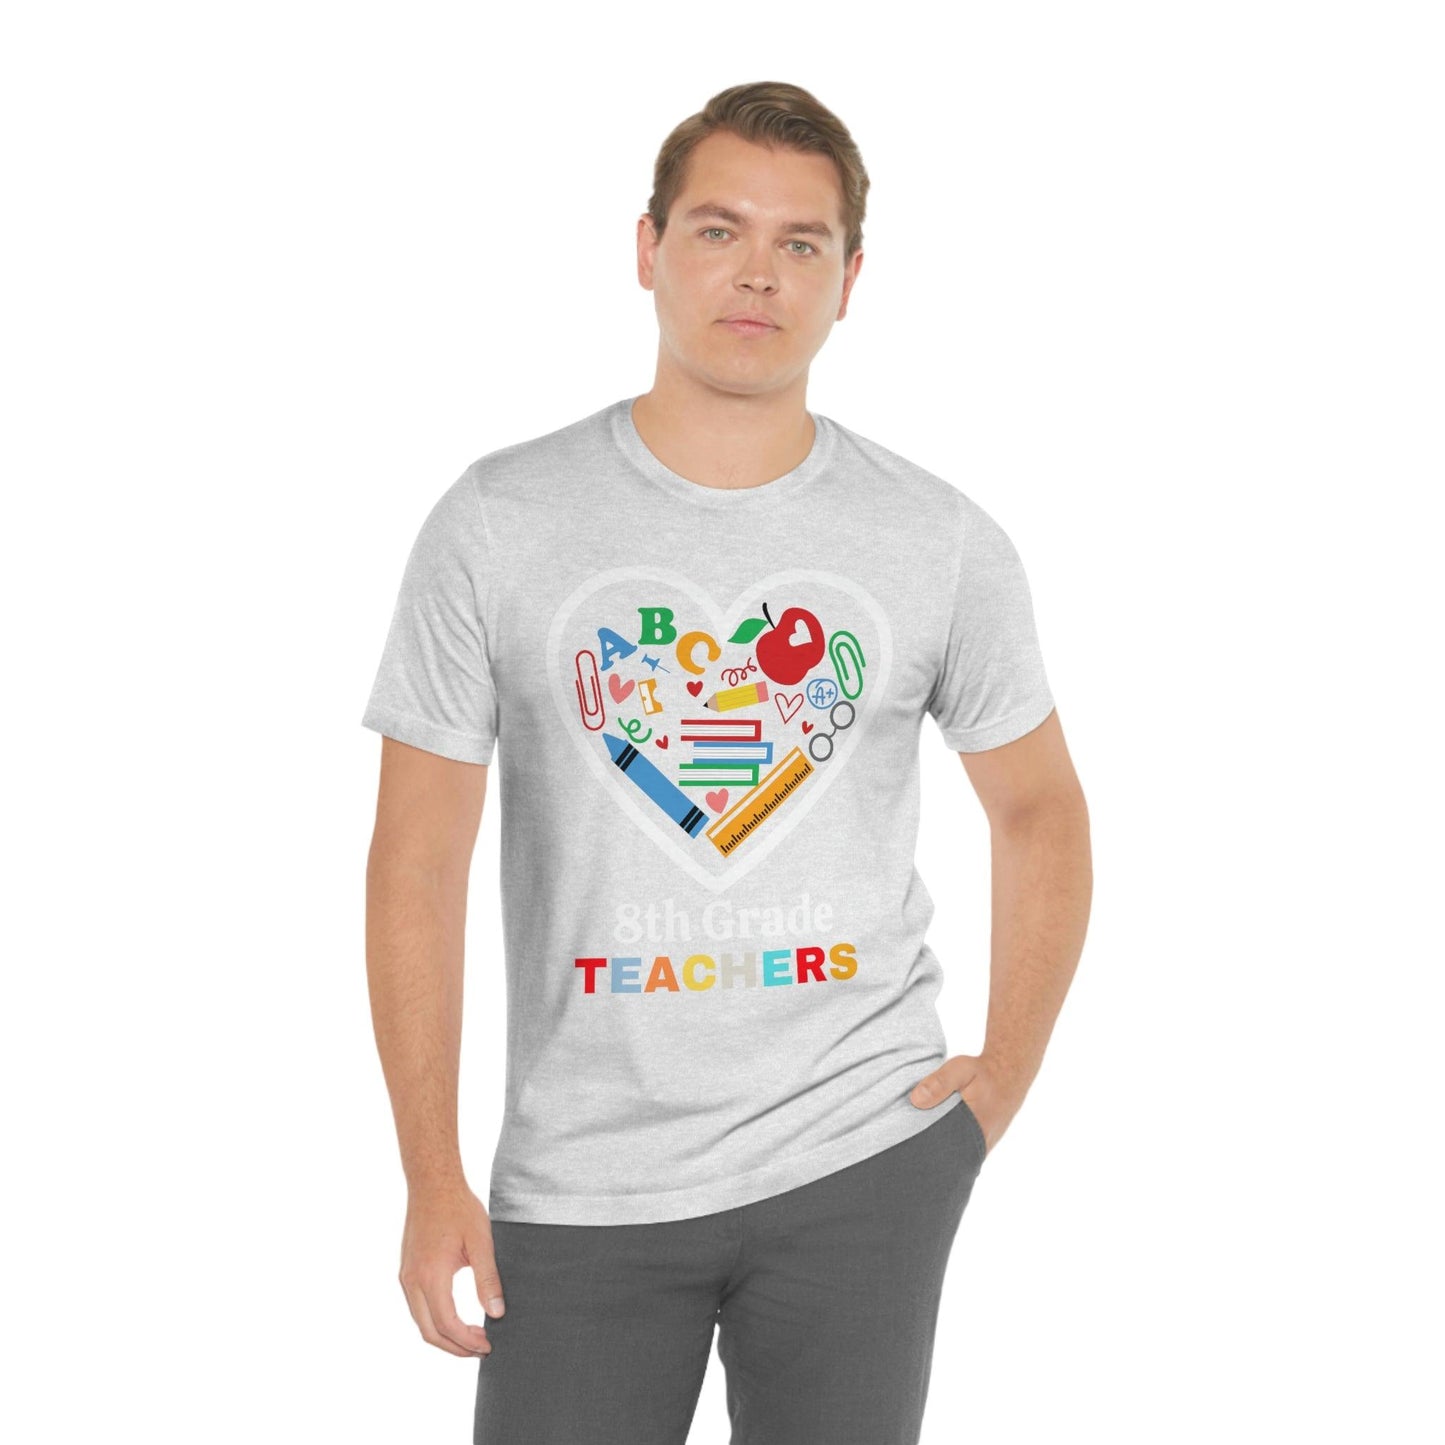 Love 8th Grade Teacher Shirt - Teacher Appreciation Shirt - Gift for Teachers - 8th Grade shirt